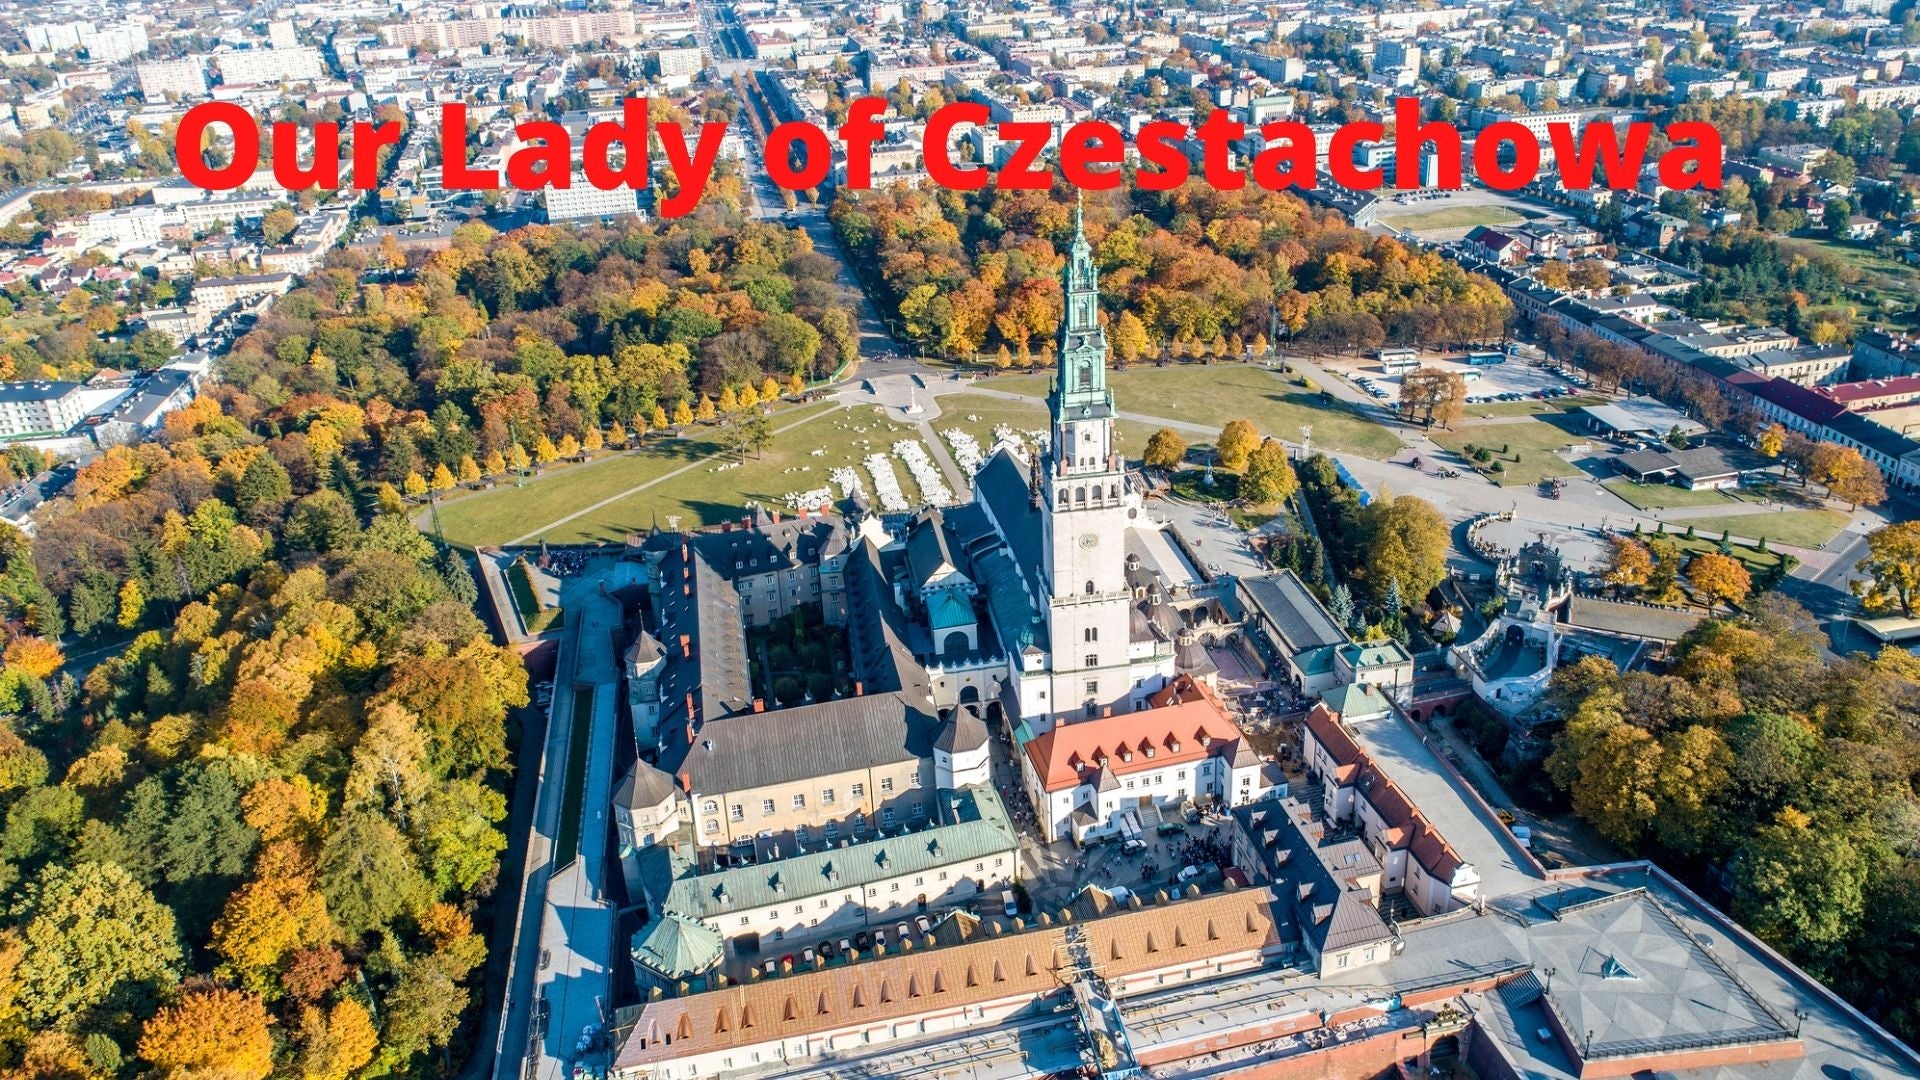 Our Lady of Czestochowa Jasna Gora Poland DVD - Bob and Penny Lord